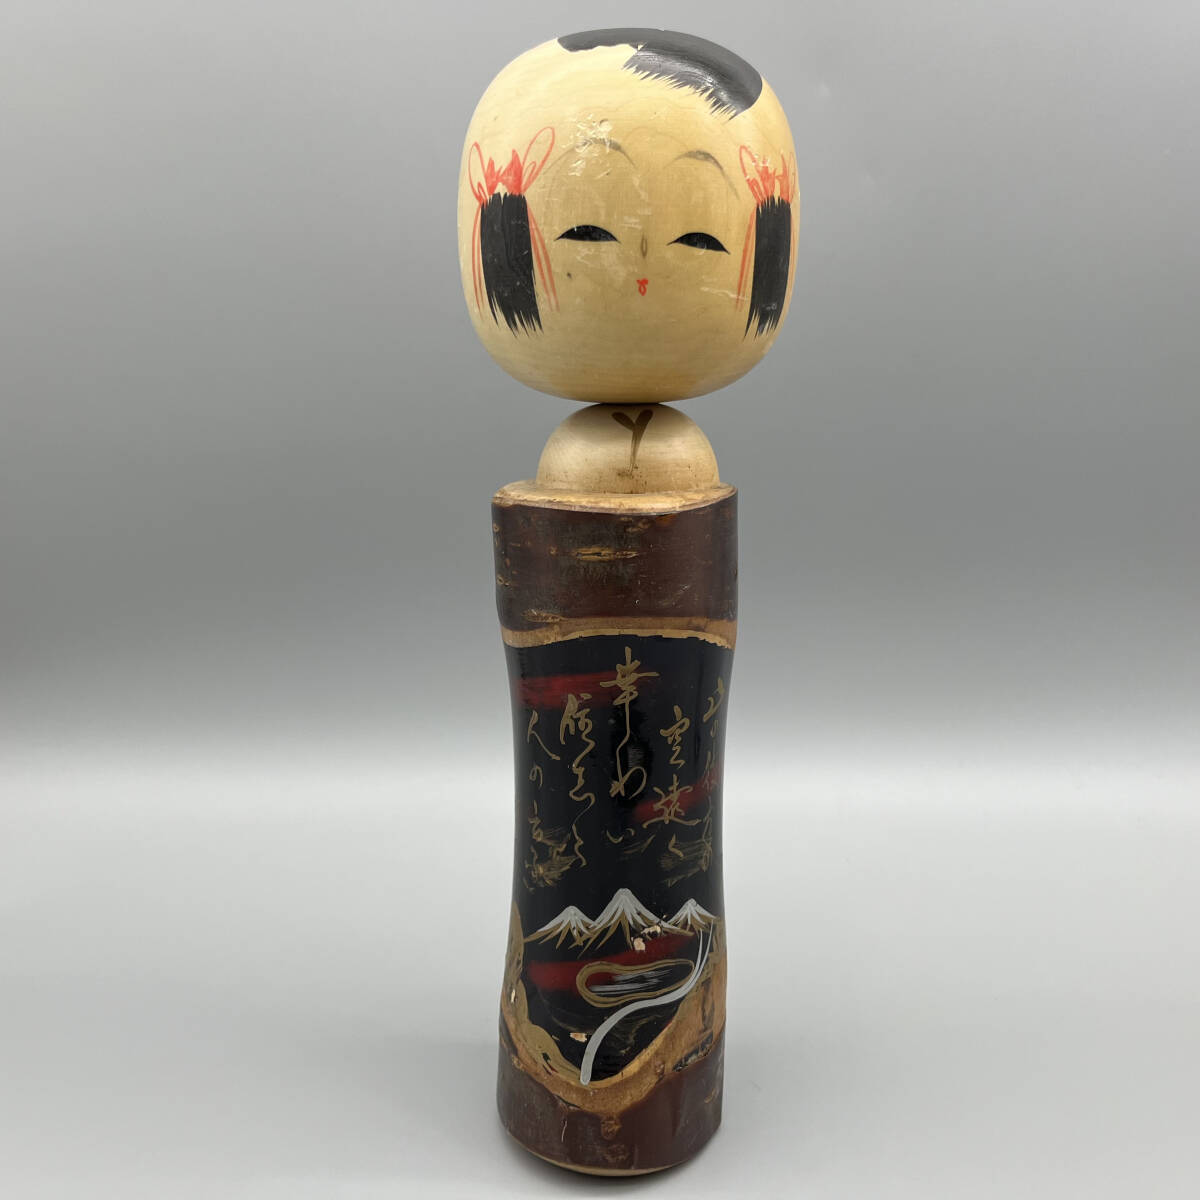 こけし 塩原 詳細不明 伝統こけし 日本人形 伝統工芸 工芸品 木工 管理番号Y-24042203_画像1